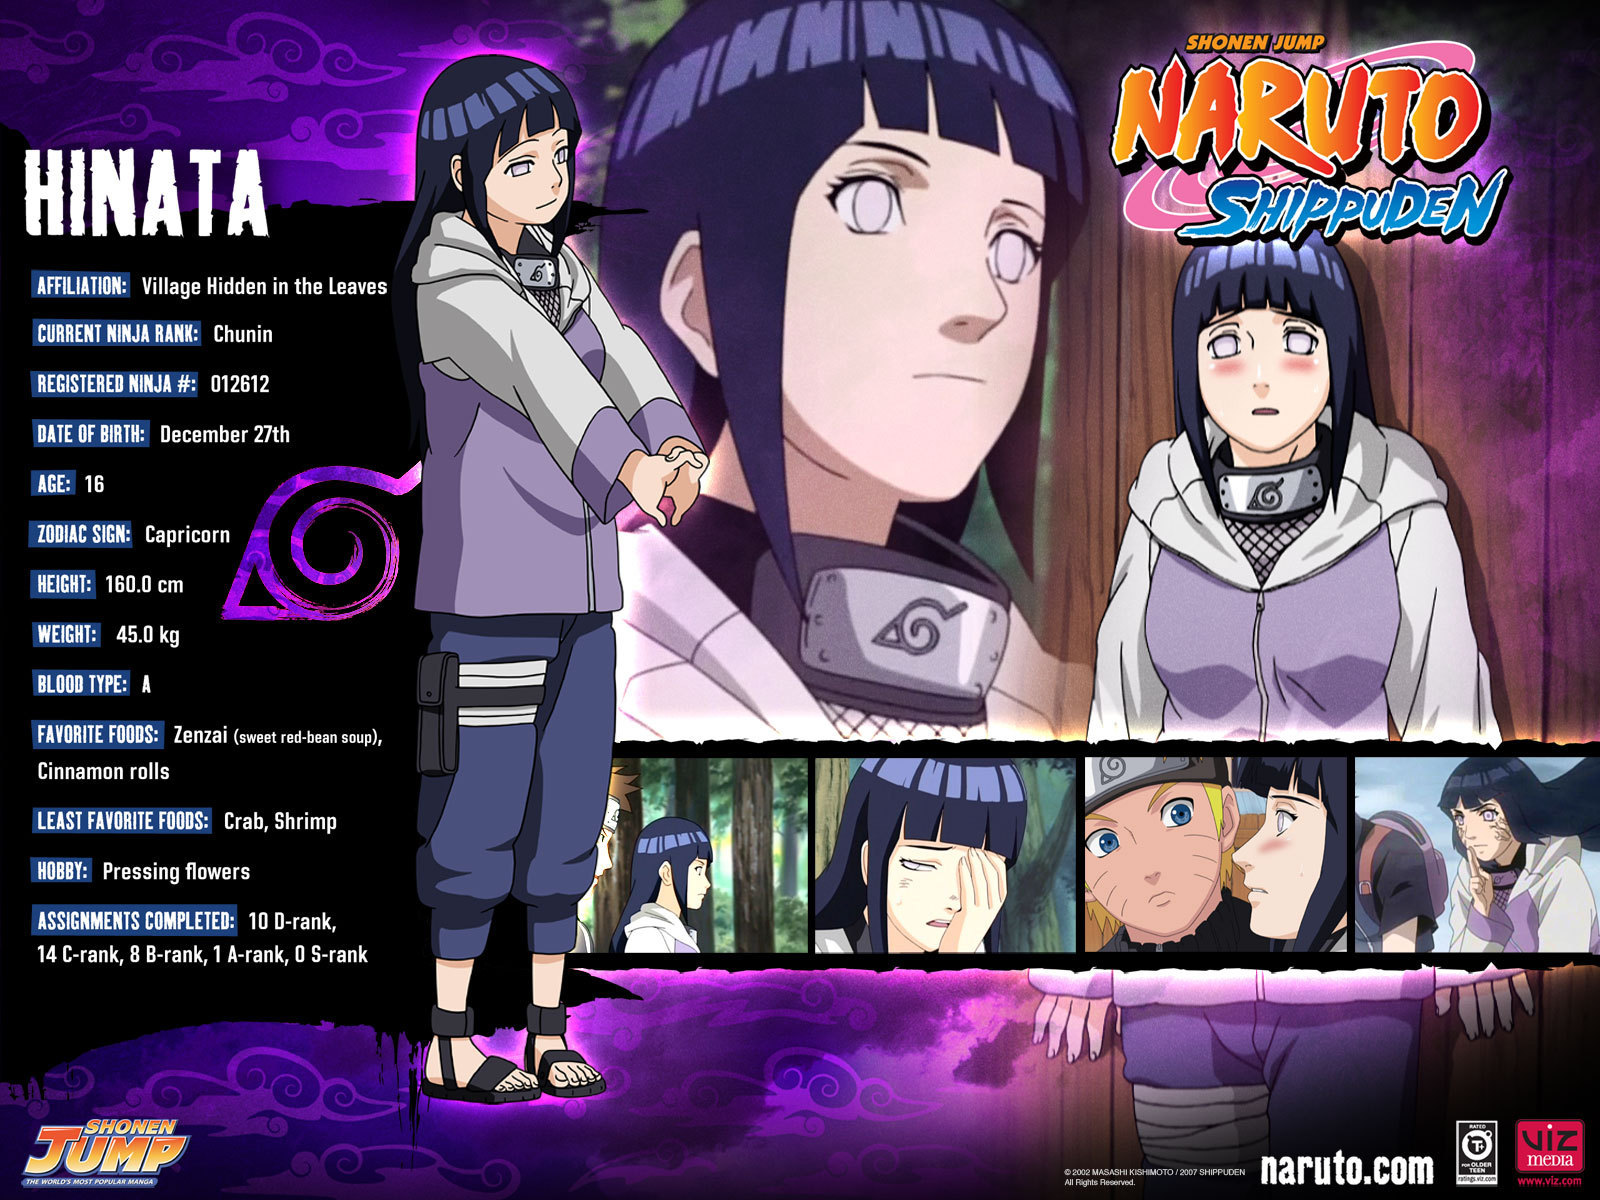 Description Hinata Naruto Shippuden Wallpaper Is A